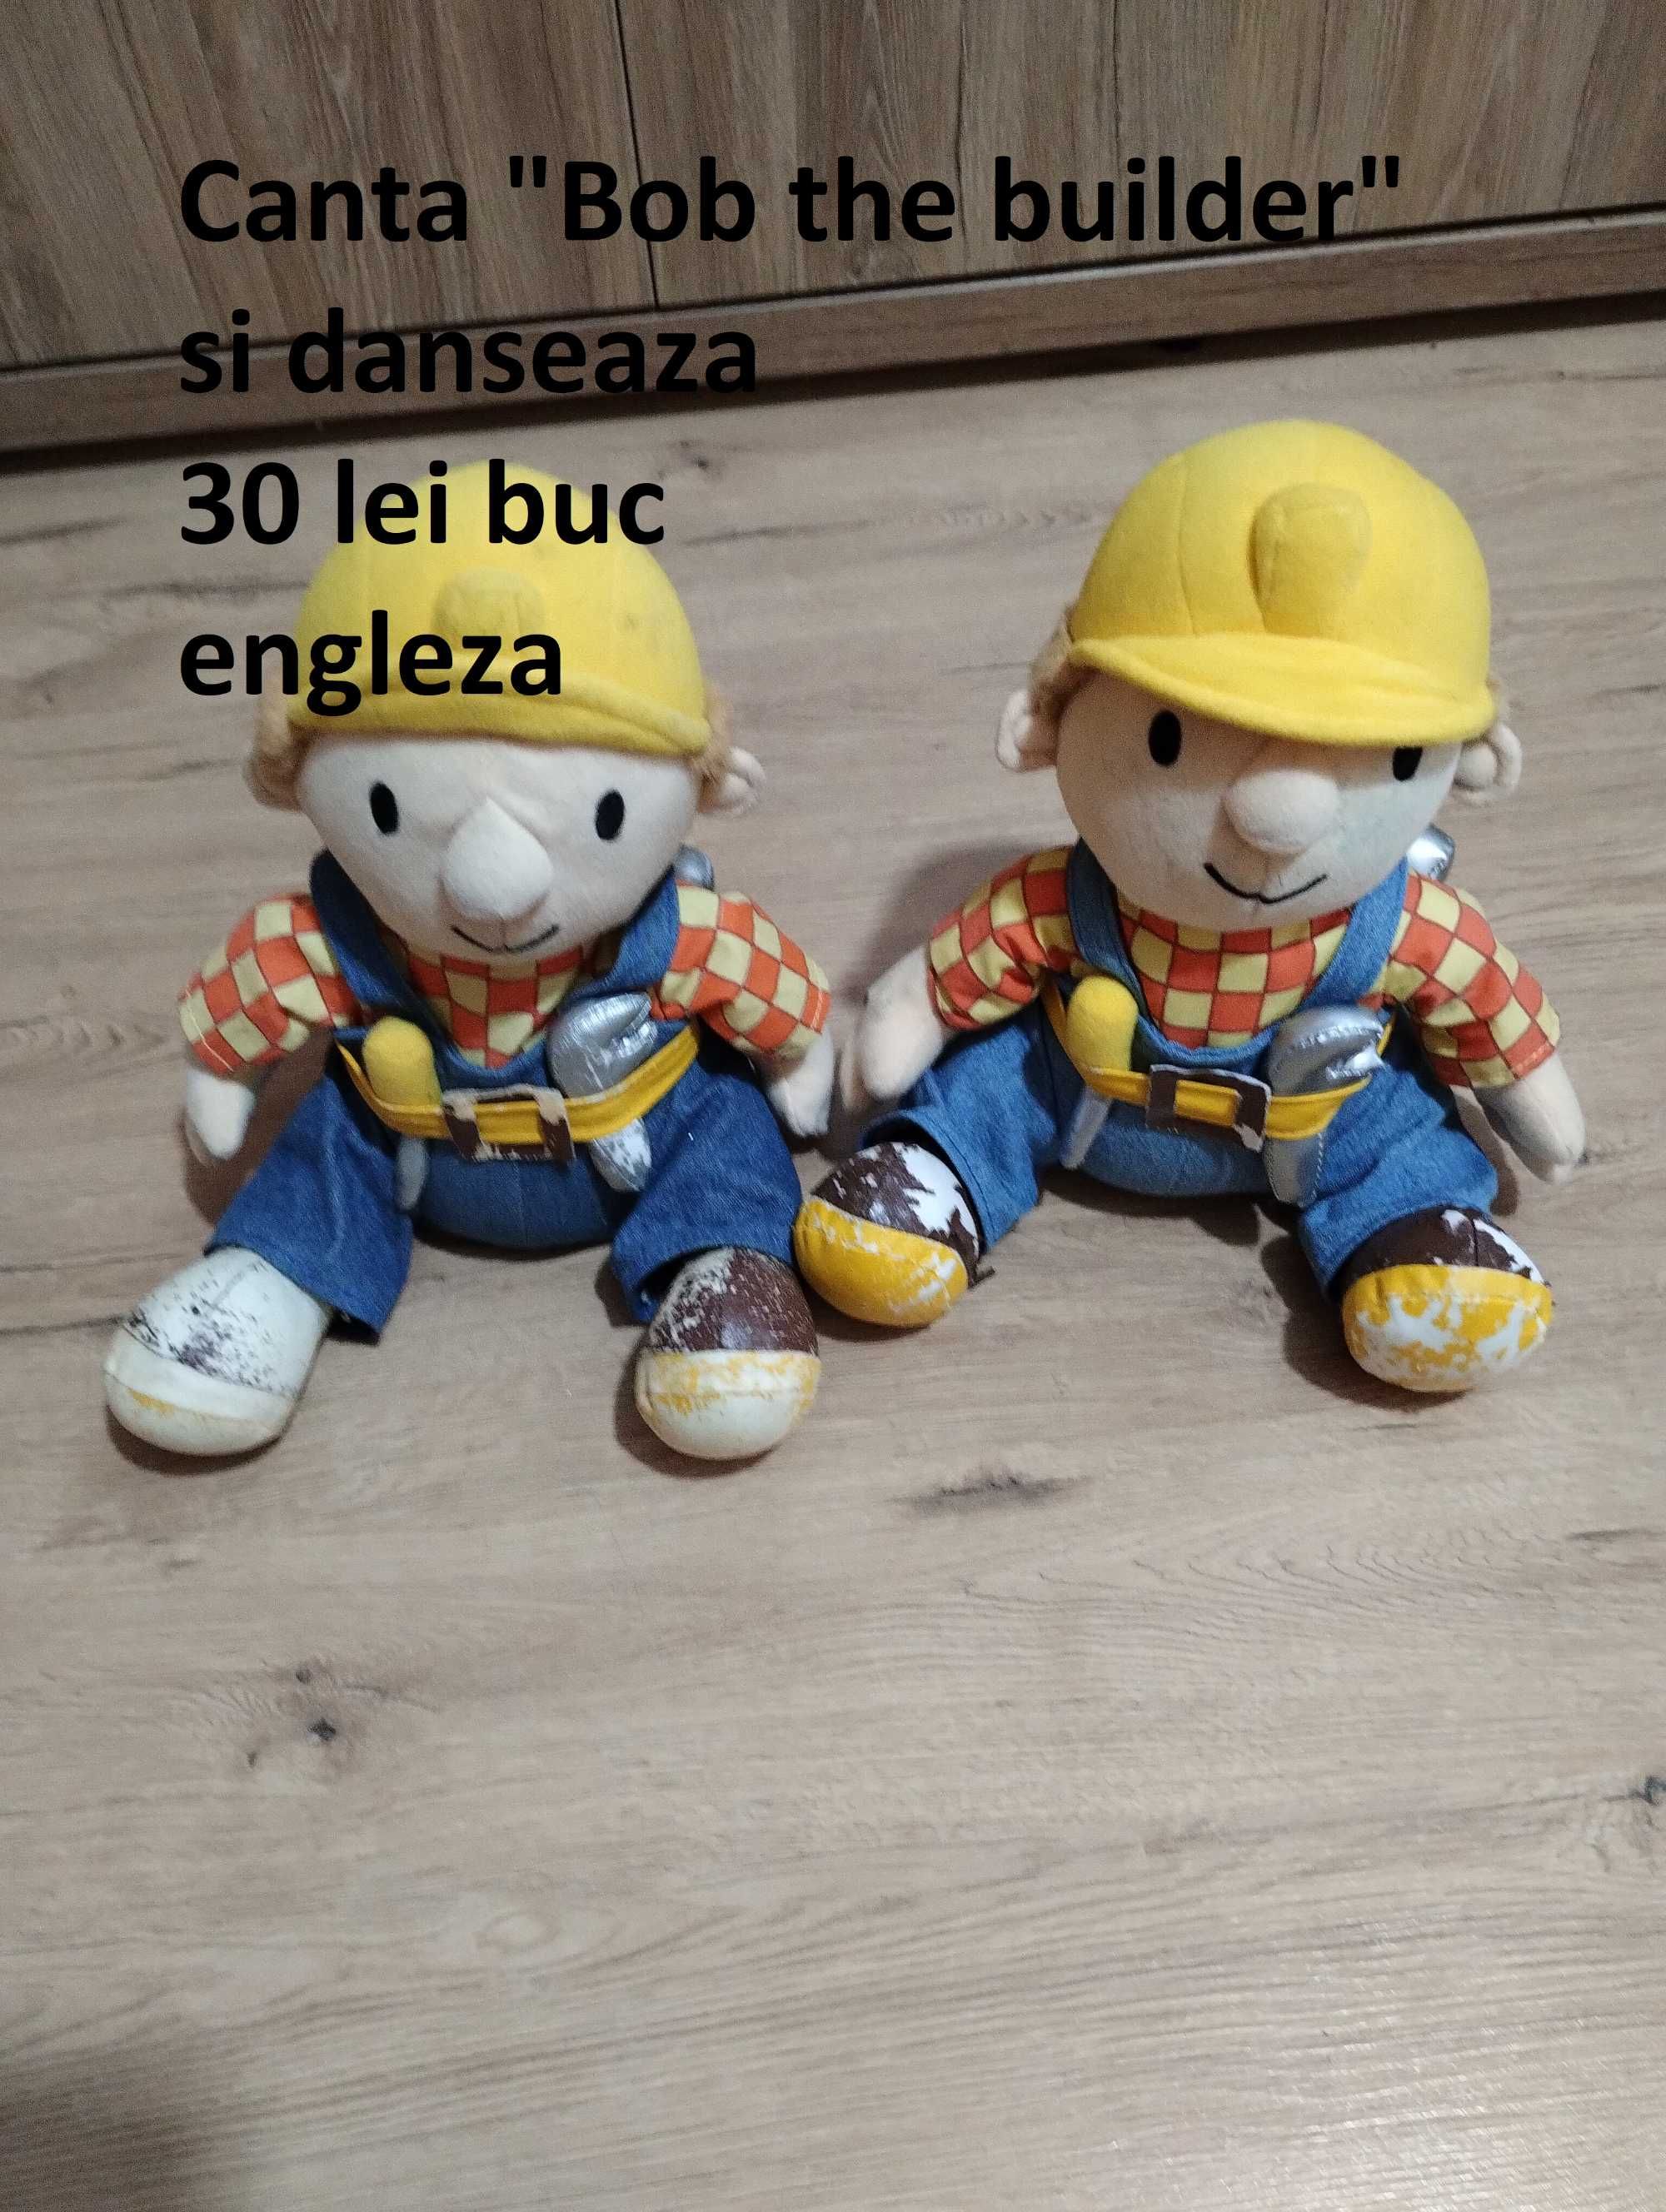 Bob the builder / Bob constructorul - figurina mare interactiva